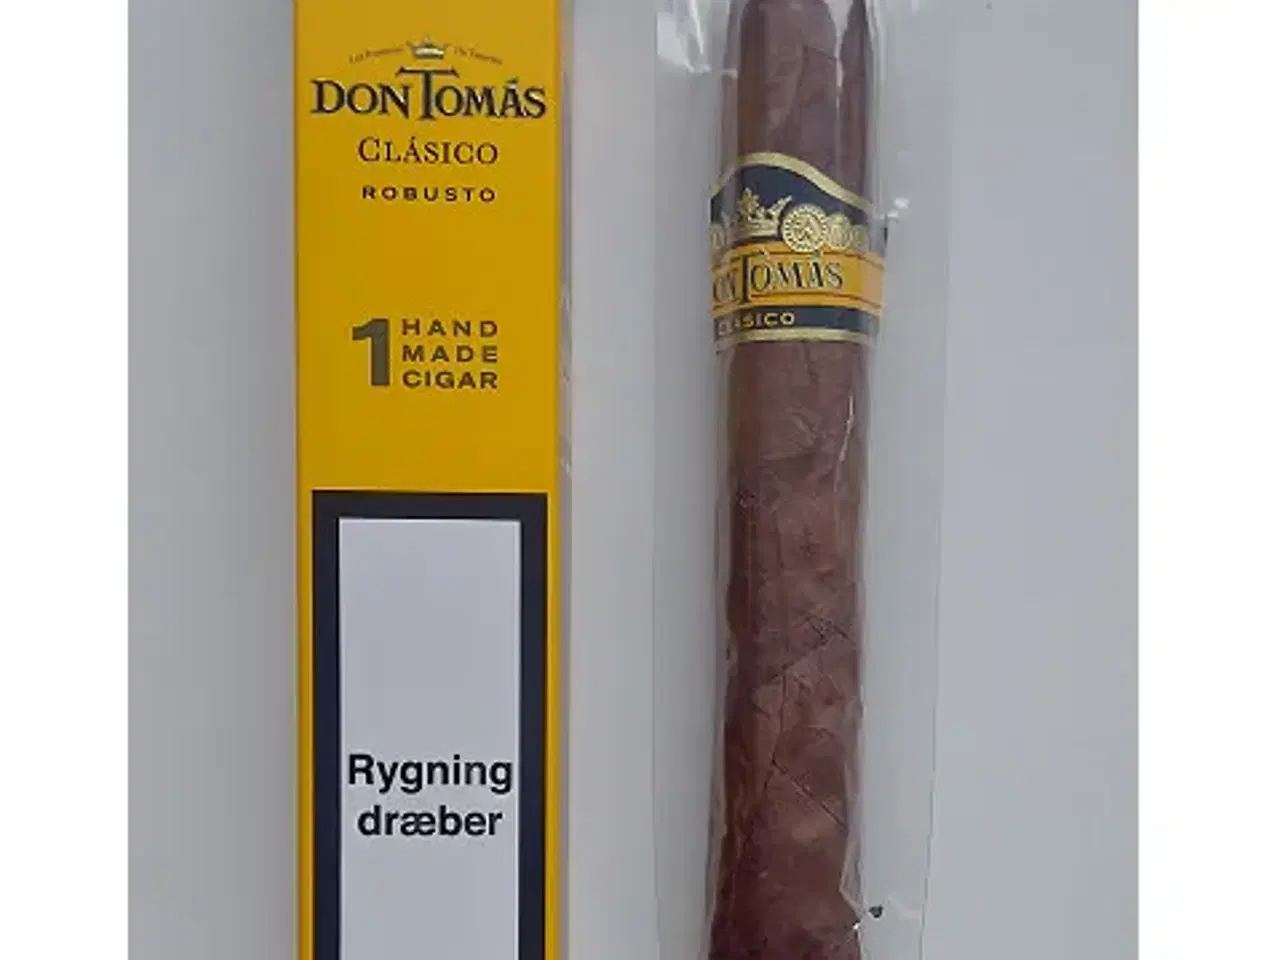 Billede 1 - 1 stk. Don Tomas Clasico robusto cigar sælges